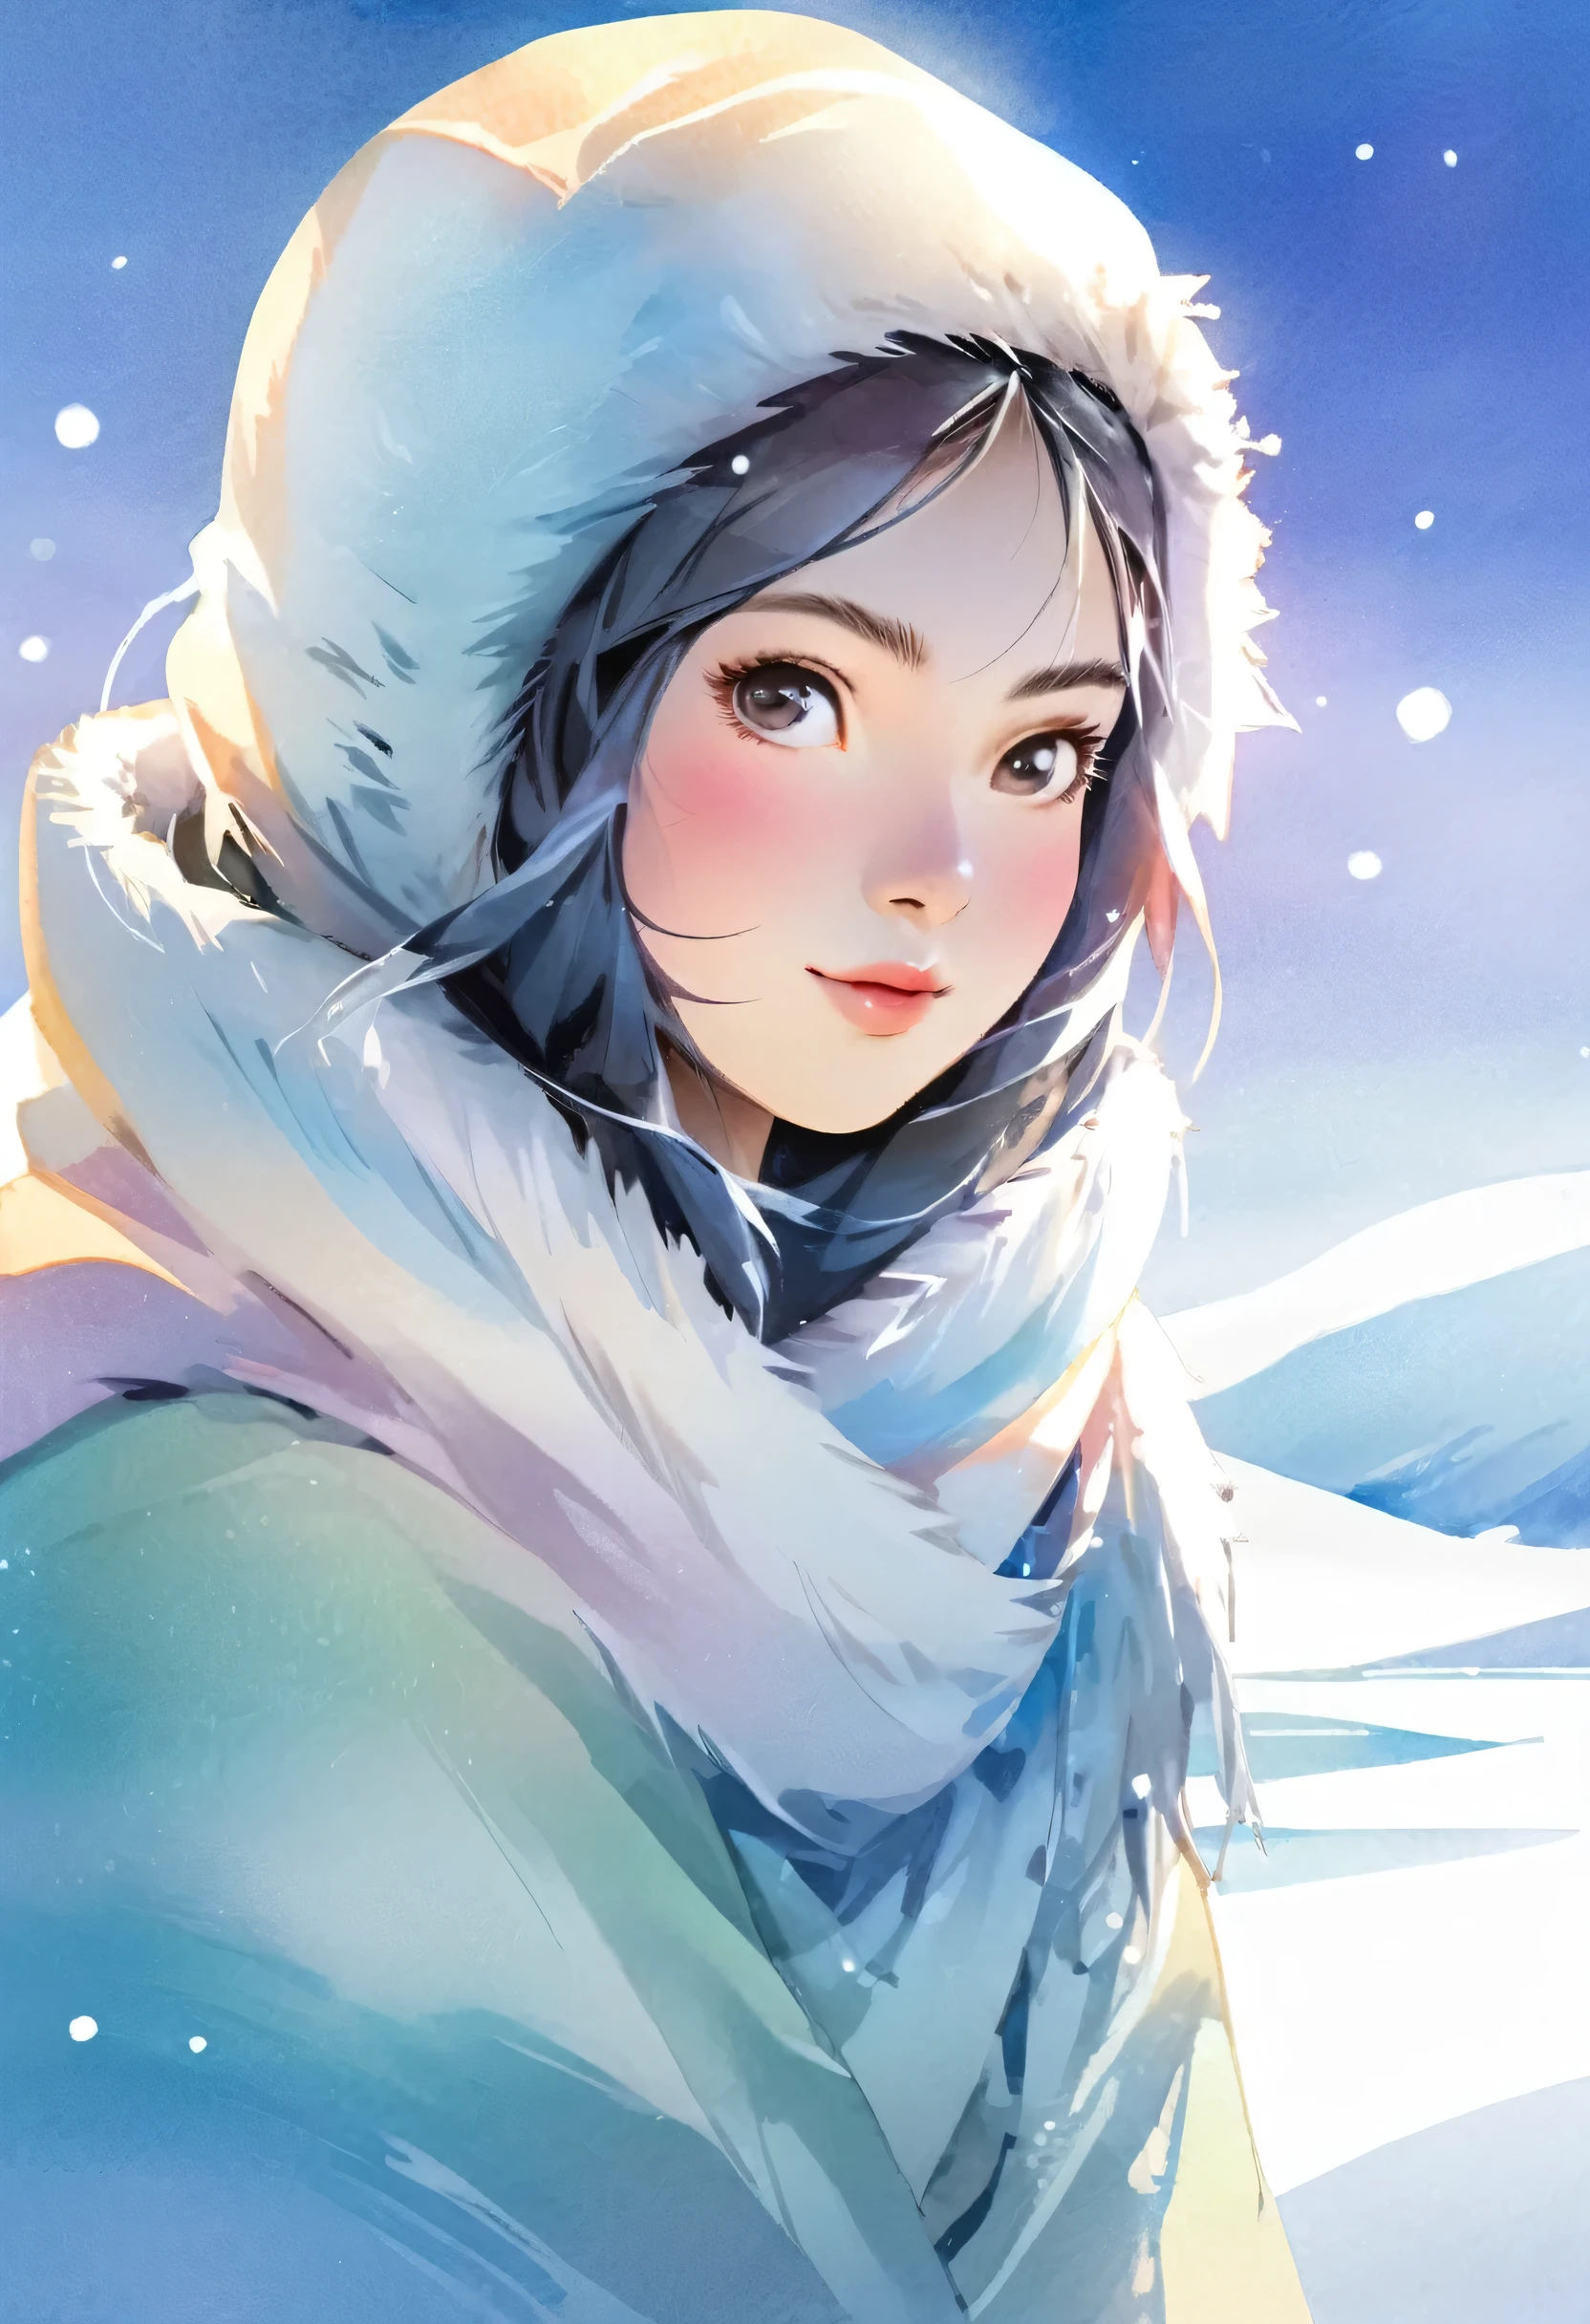 爱斯基摩女孩、北極冰、非常美麗的雪場、它反射陽光，發出明亮的光芒、自然、在美麗中感受大自然的嚴酷、傑作、超高畫質、水彩、